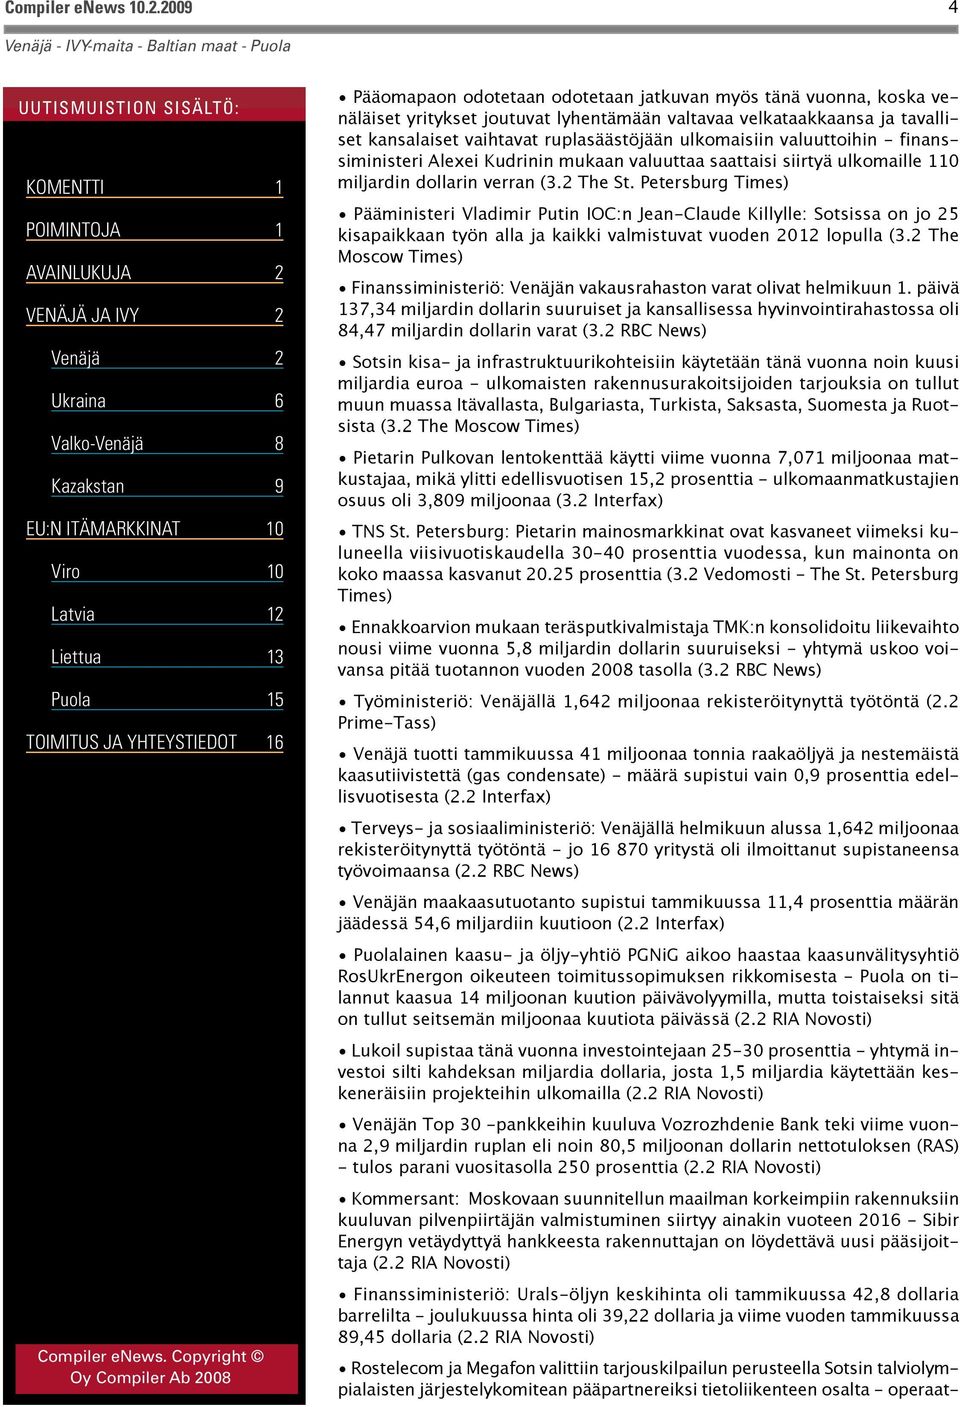 Petersburg Times) Pääministeri Vladimir Putin IOC:n Jean-Claude Killylle: Sotsissa on jo 25 kisapaikkaan työn alla ja kaikki valmistuvat vuoden 2012 lopulla (3.